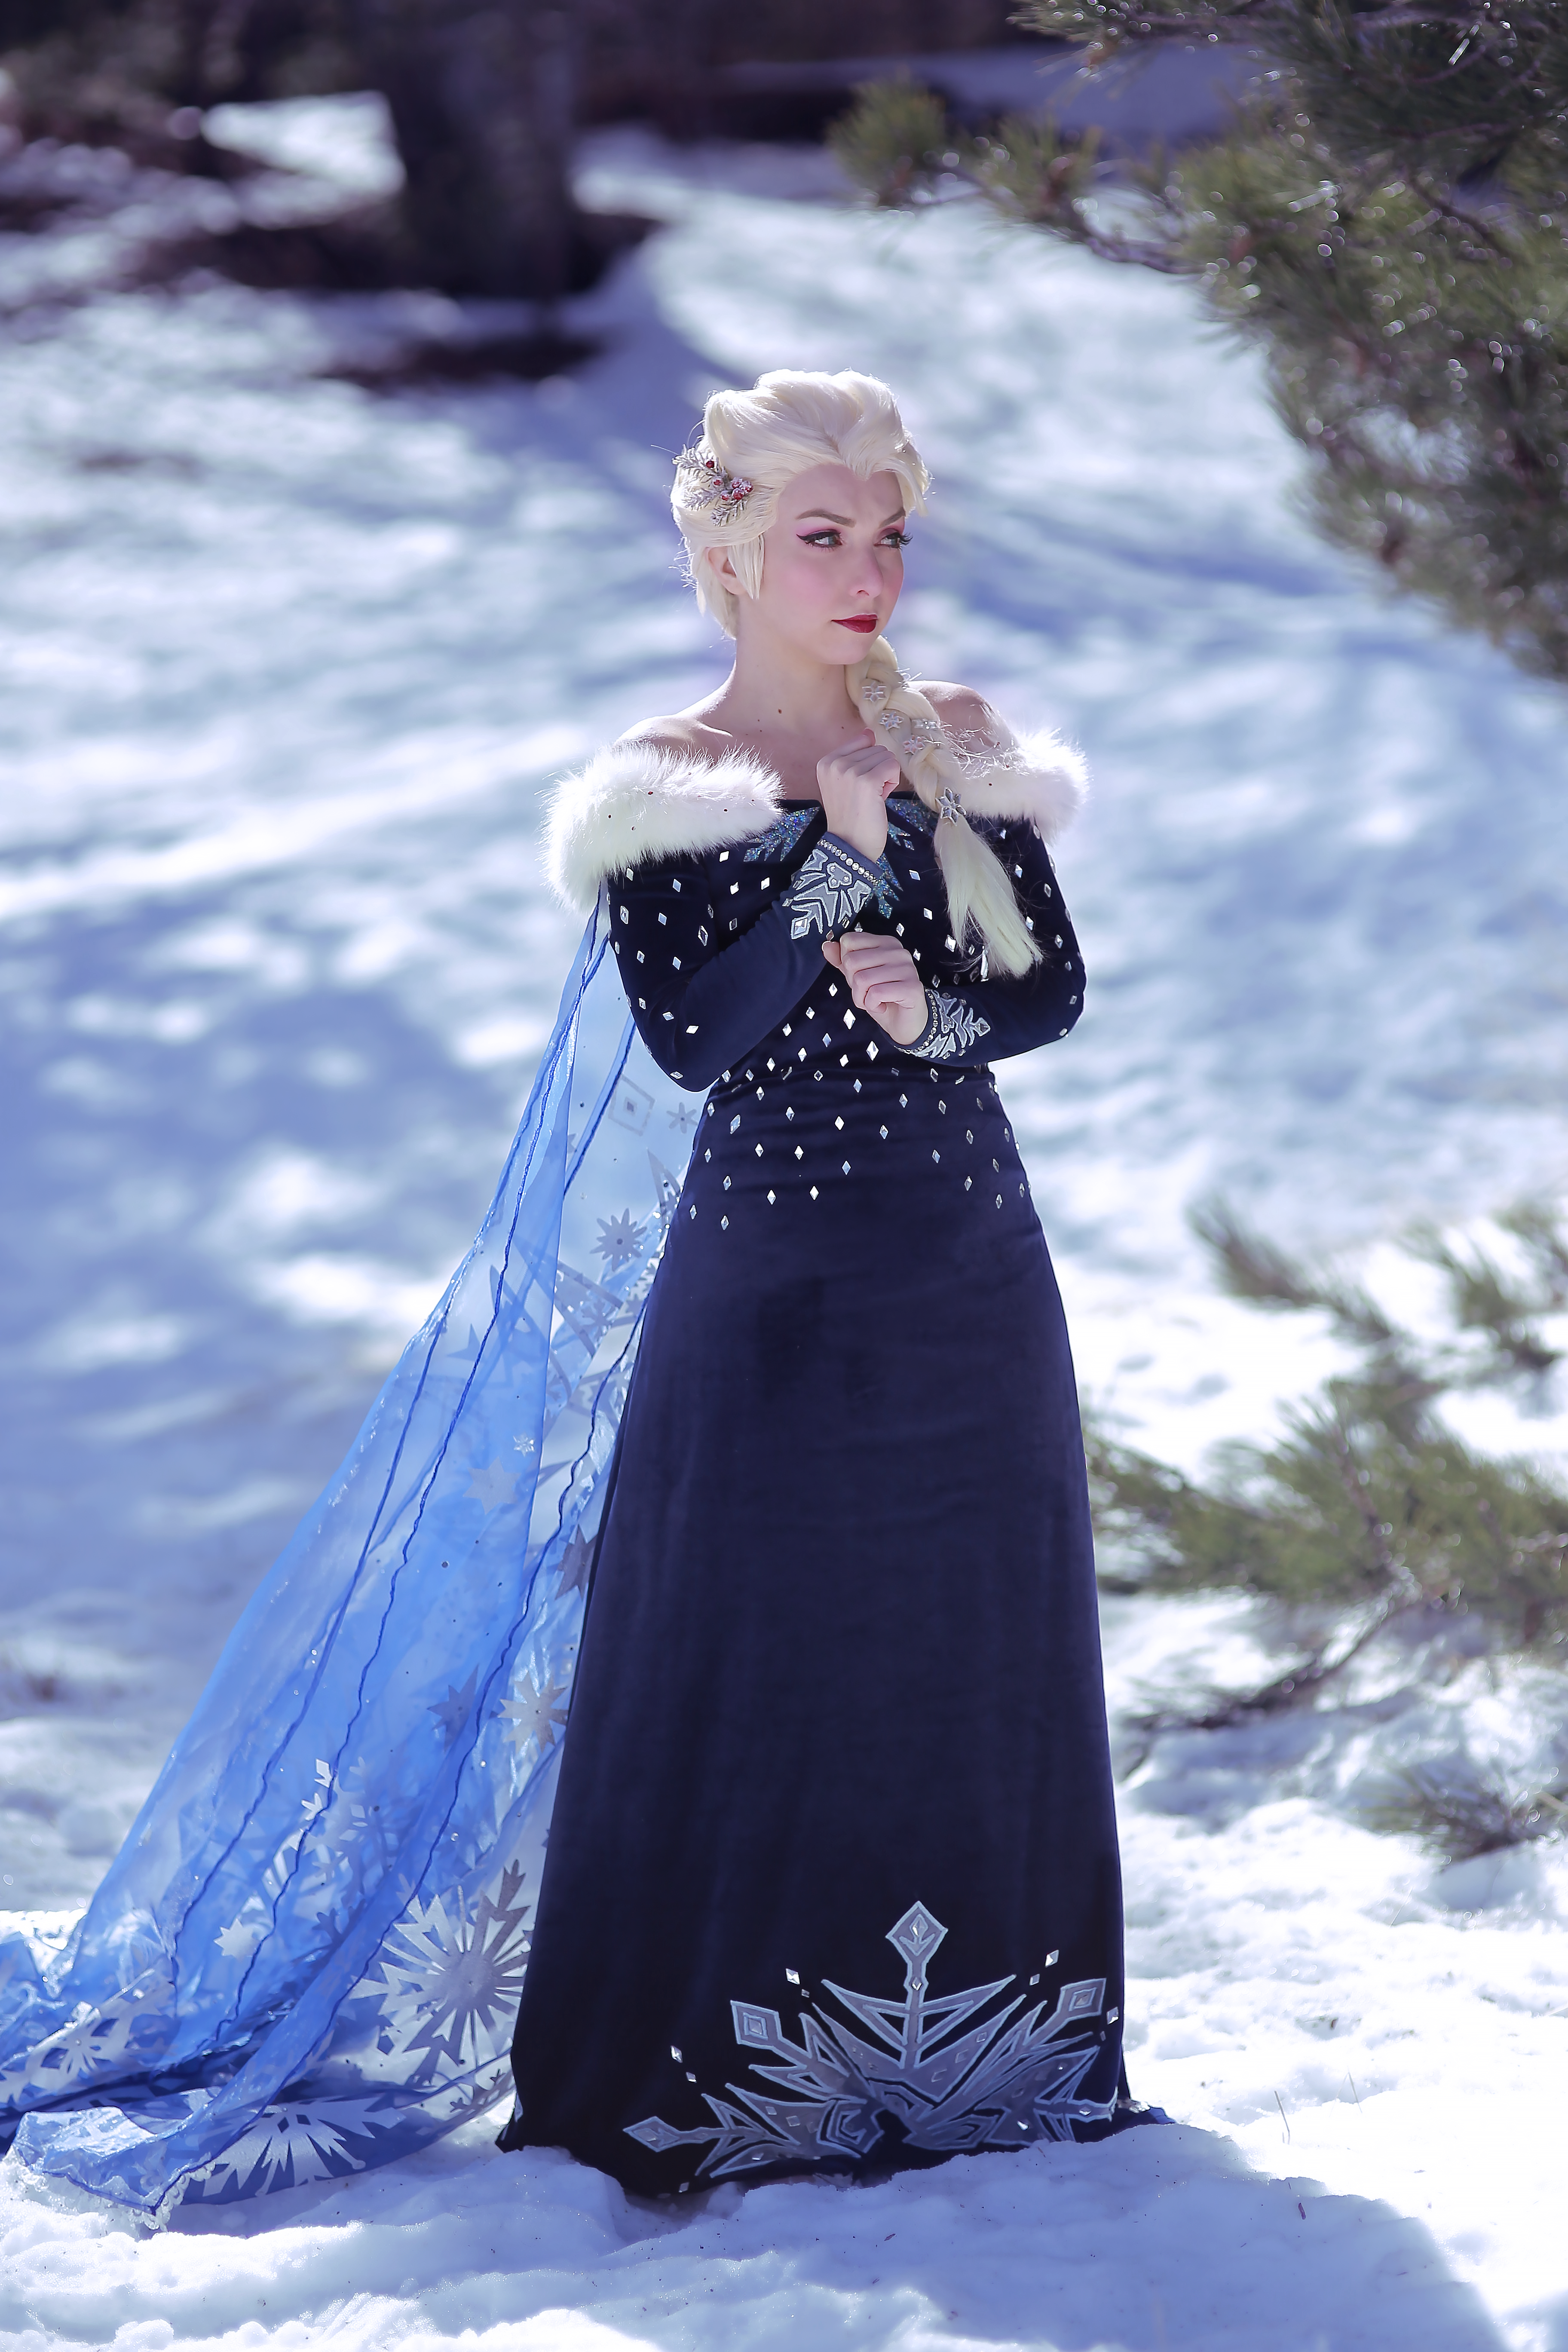 Kikyo as Elsa from Olaf's Frozen Adventure